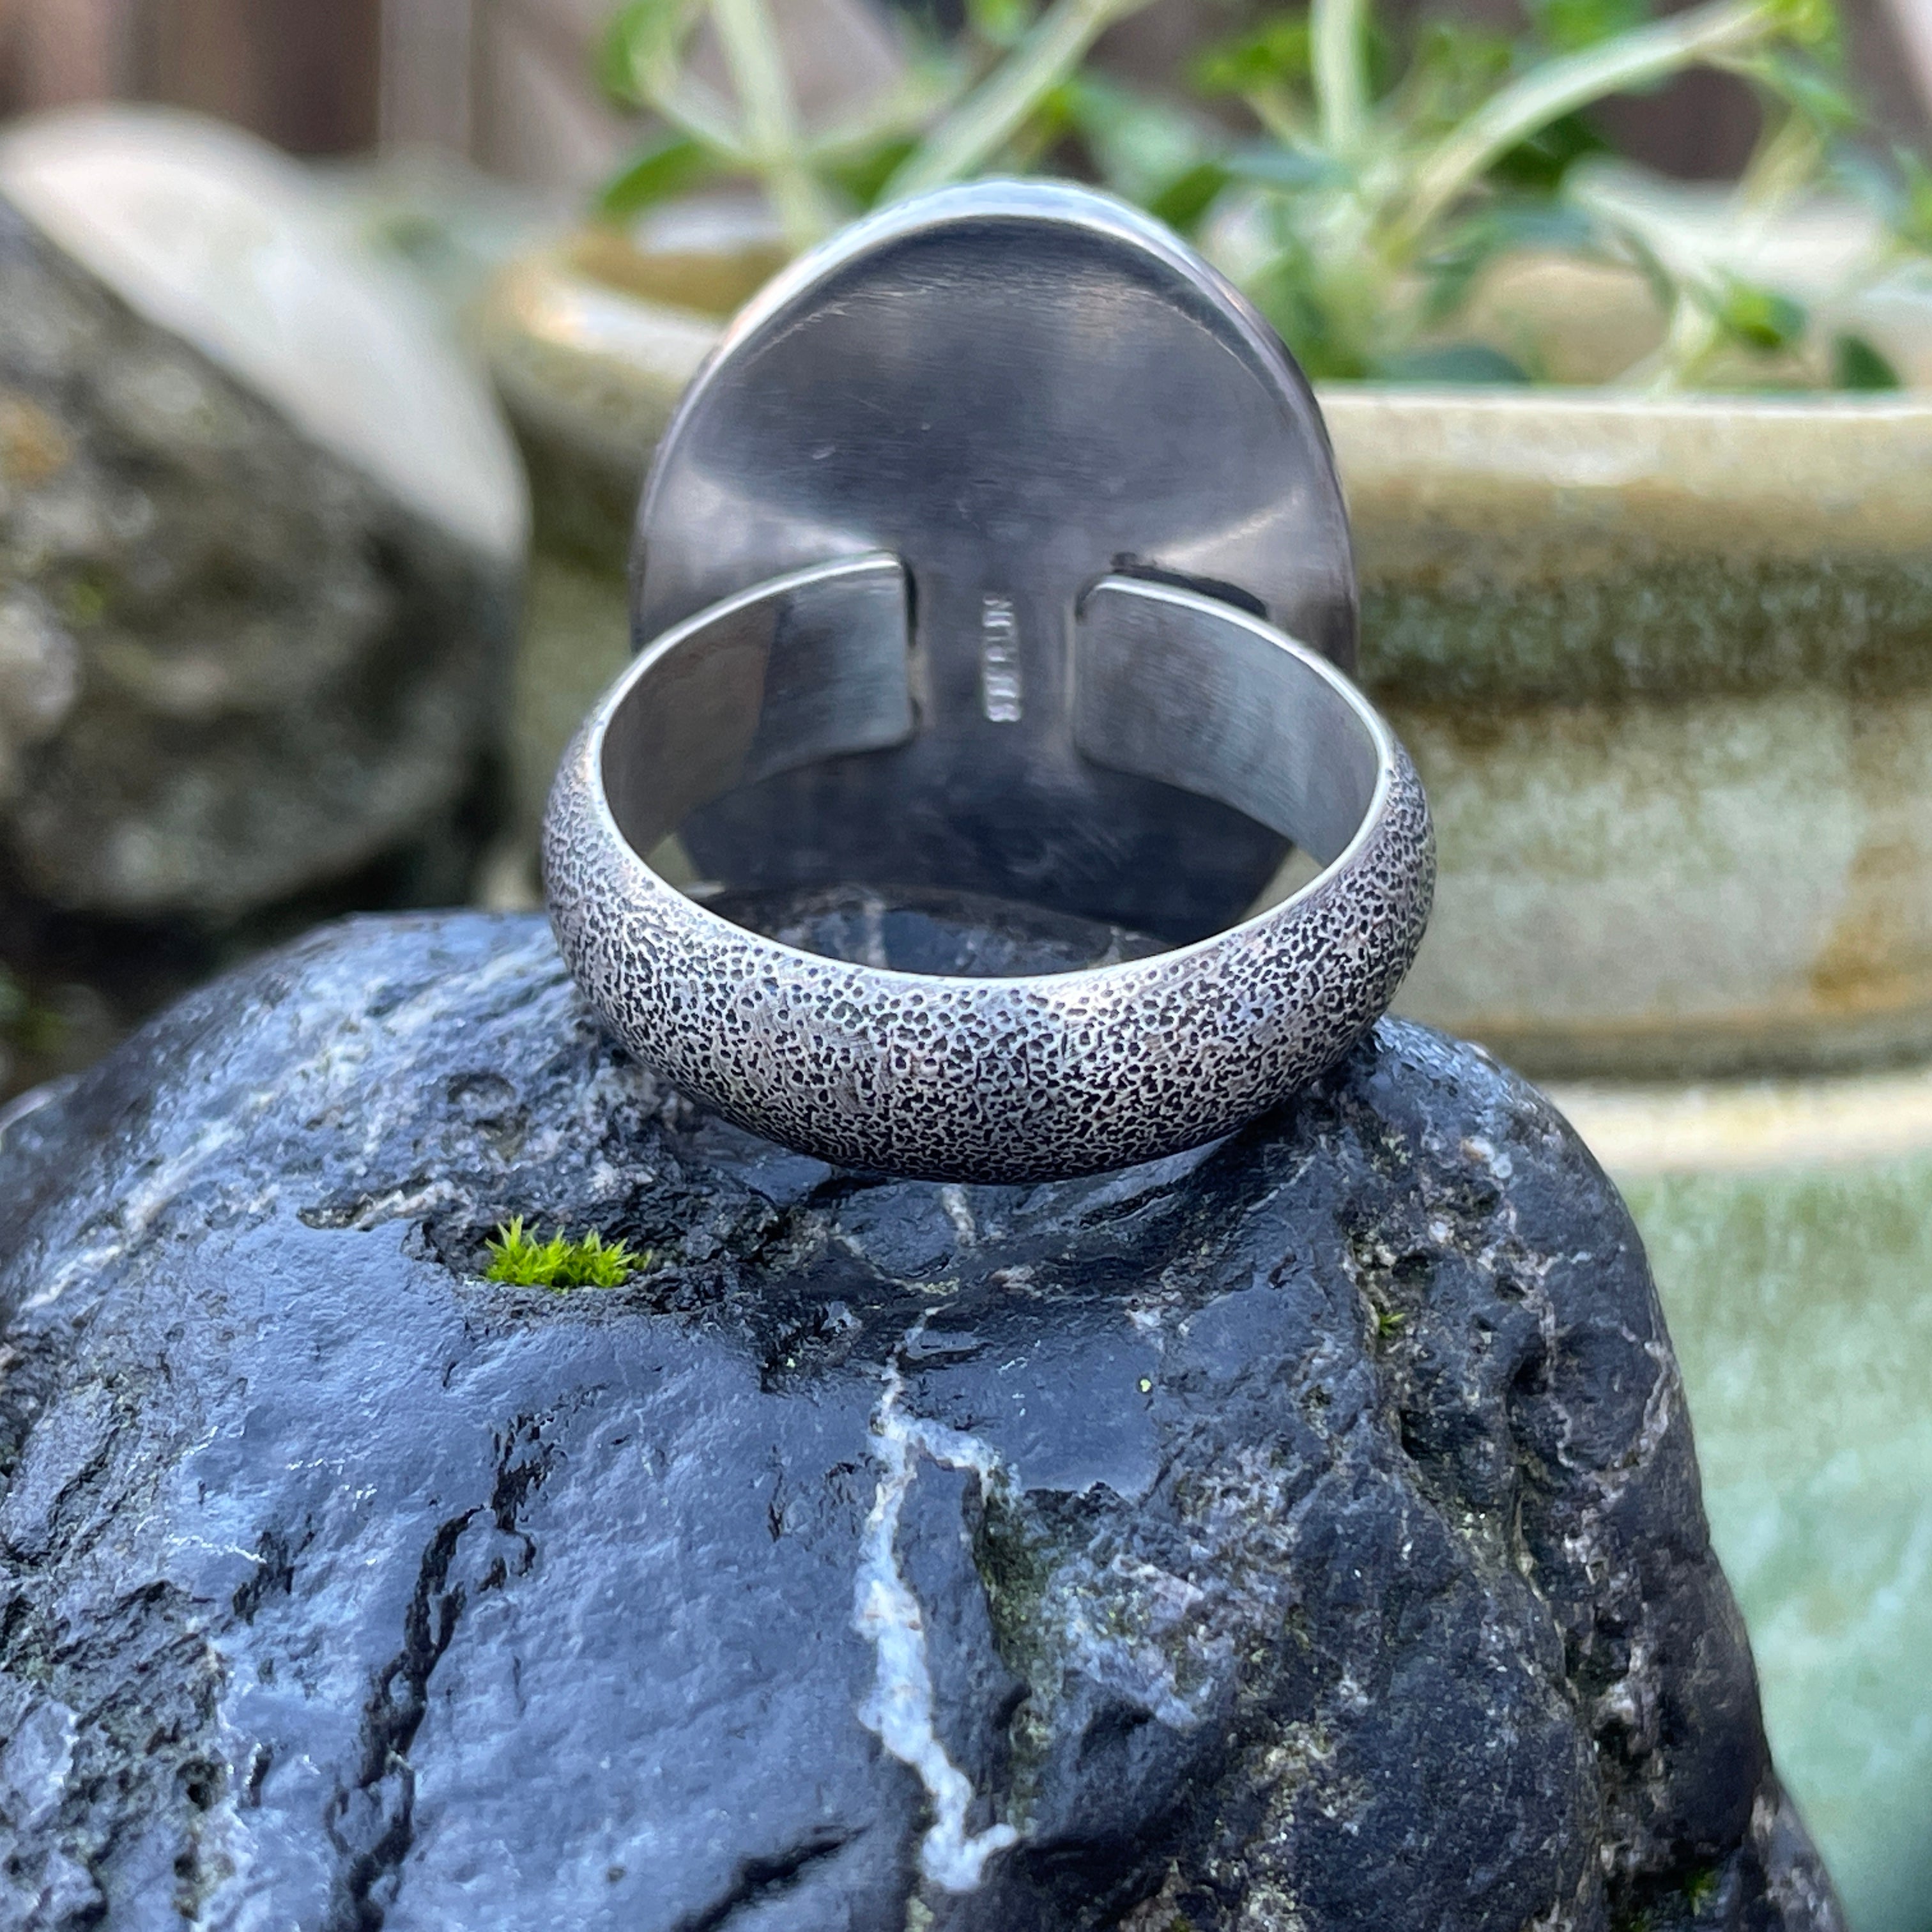 Labradorite Ring ~ Size 9